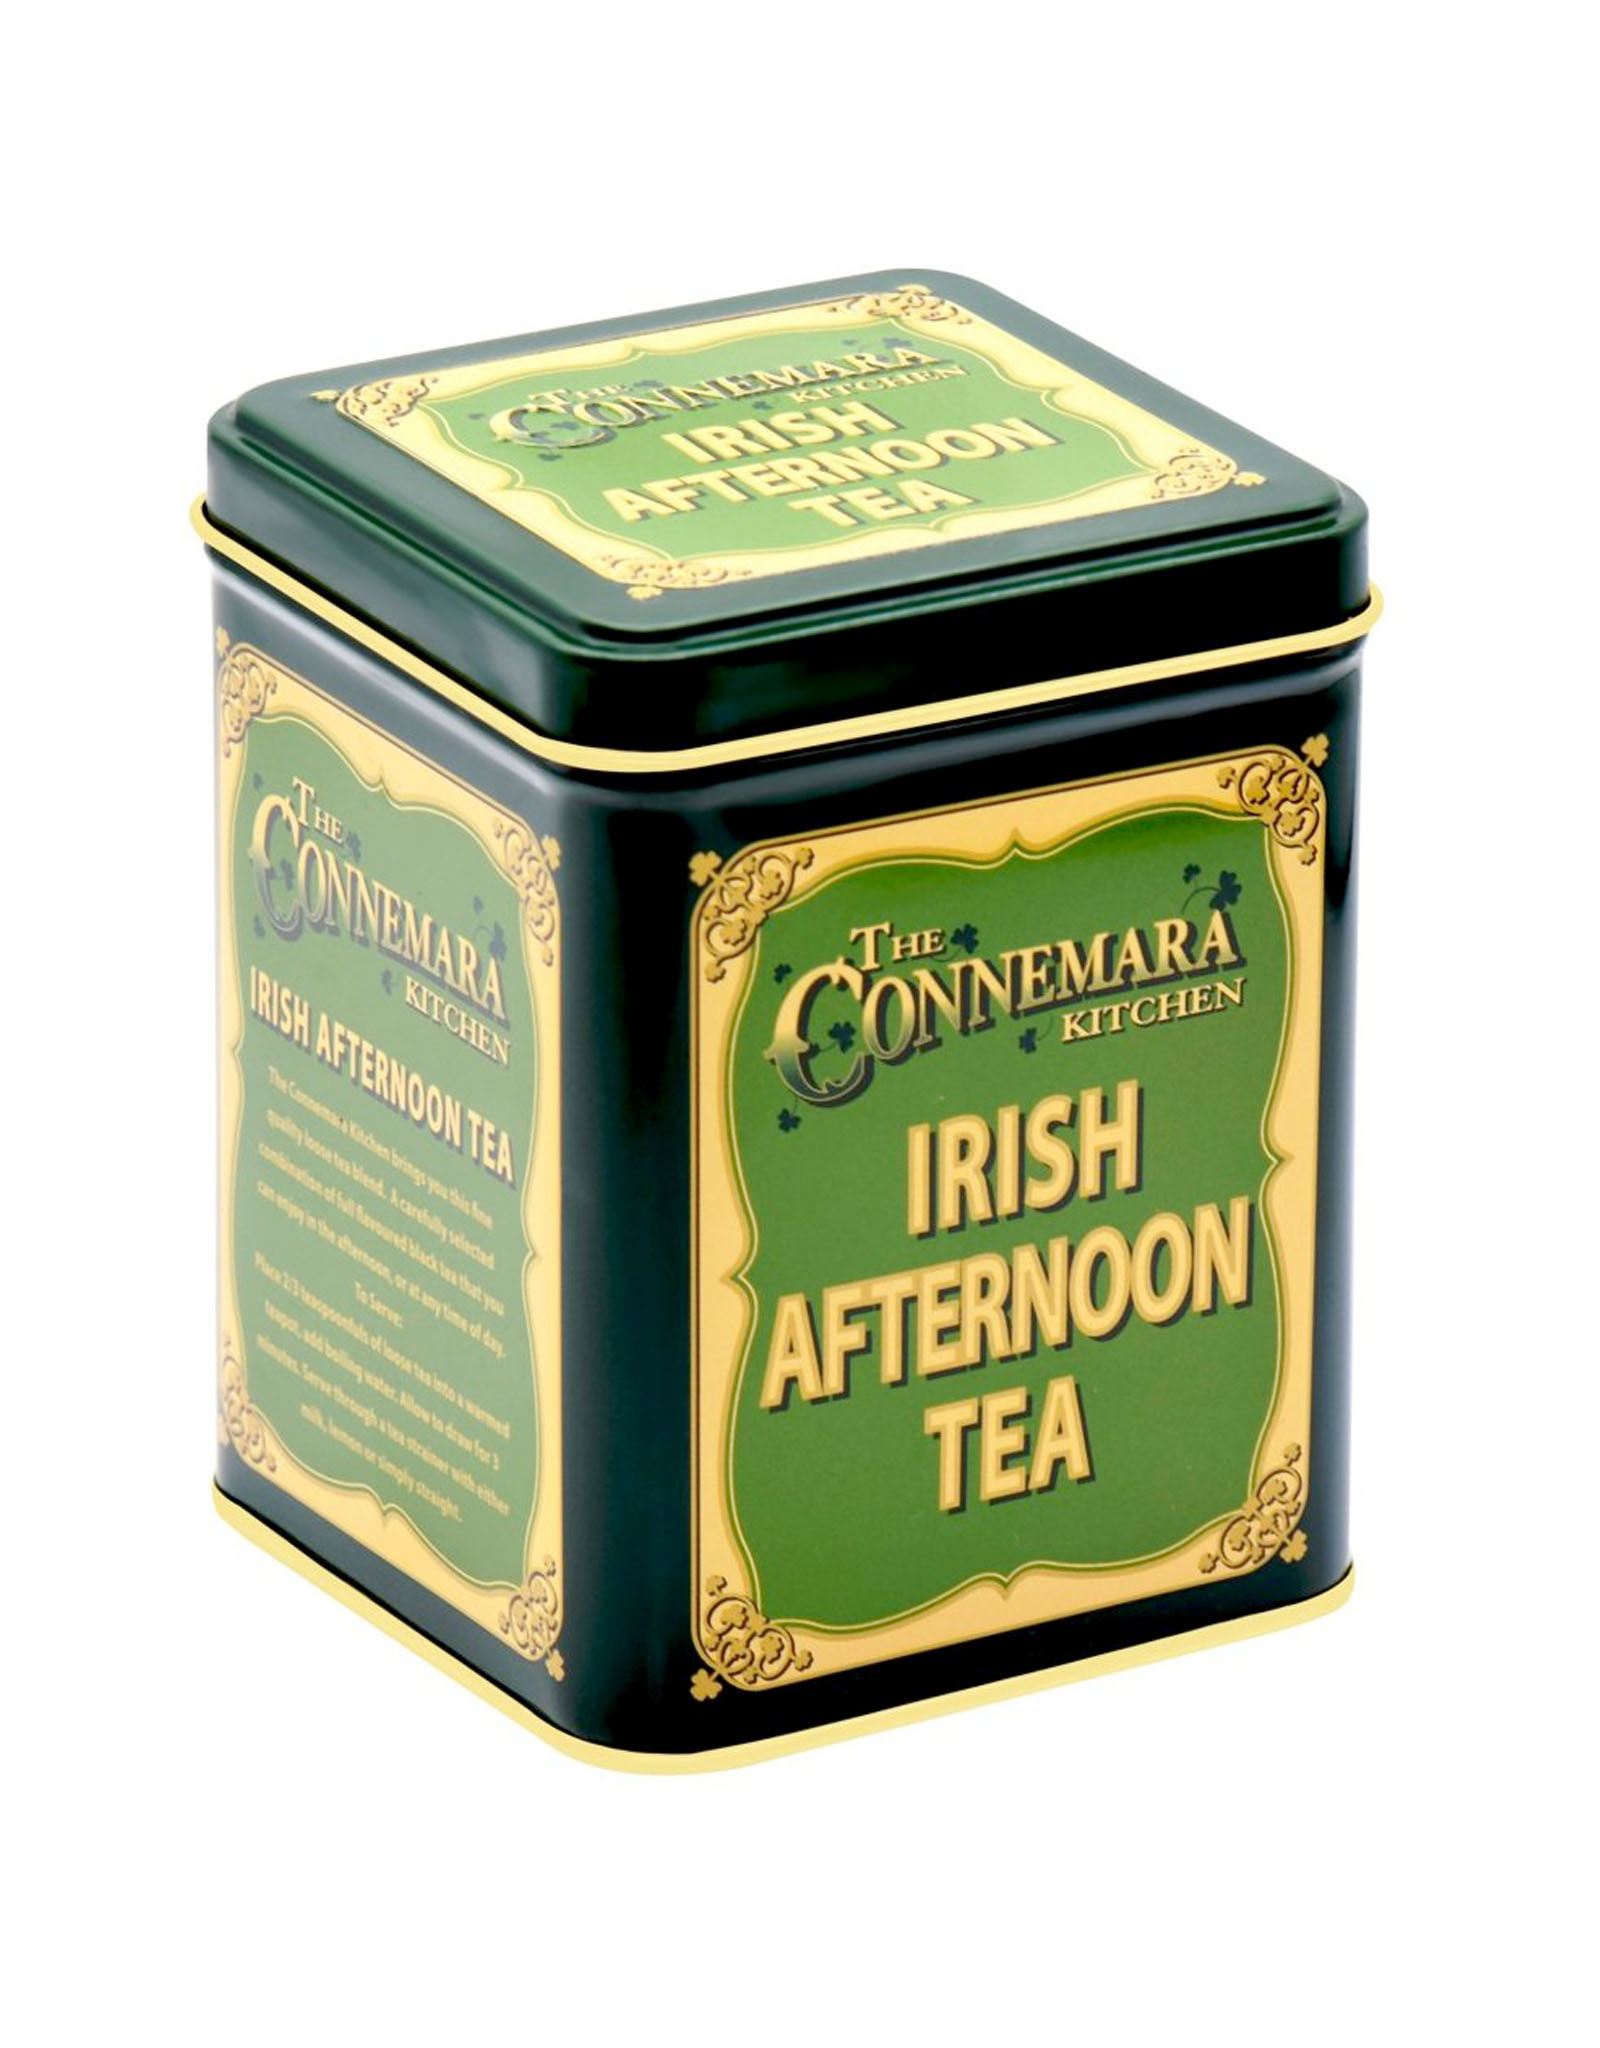 TEAS TIN OF IRISH LOOSE-LEAF AFTERNOON TEA (90g)